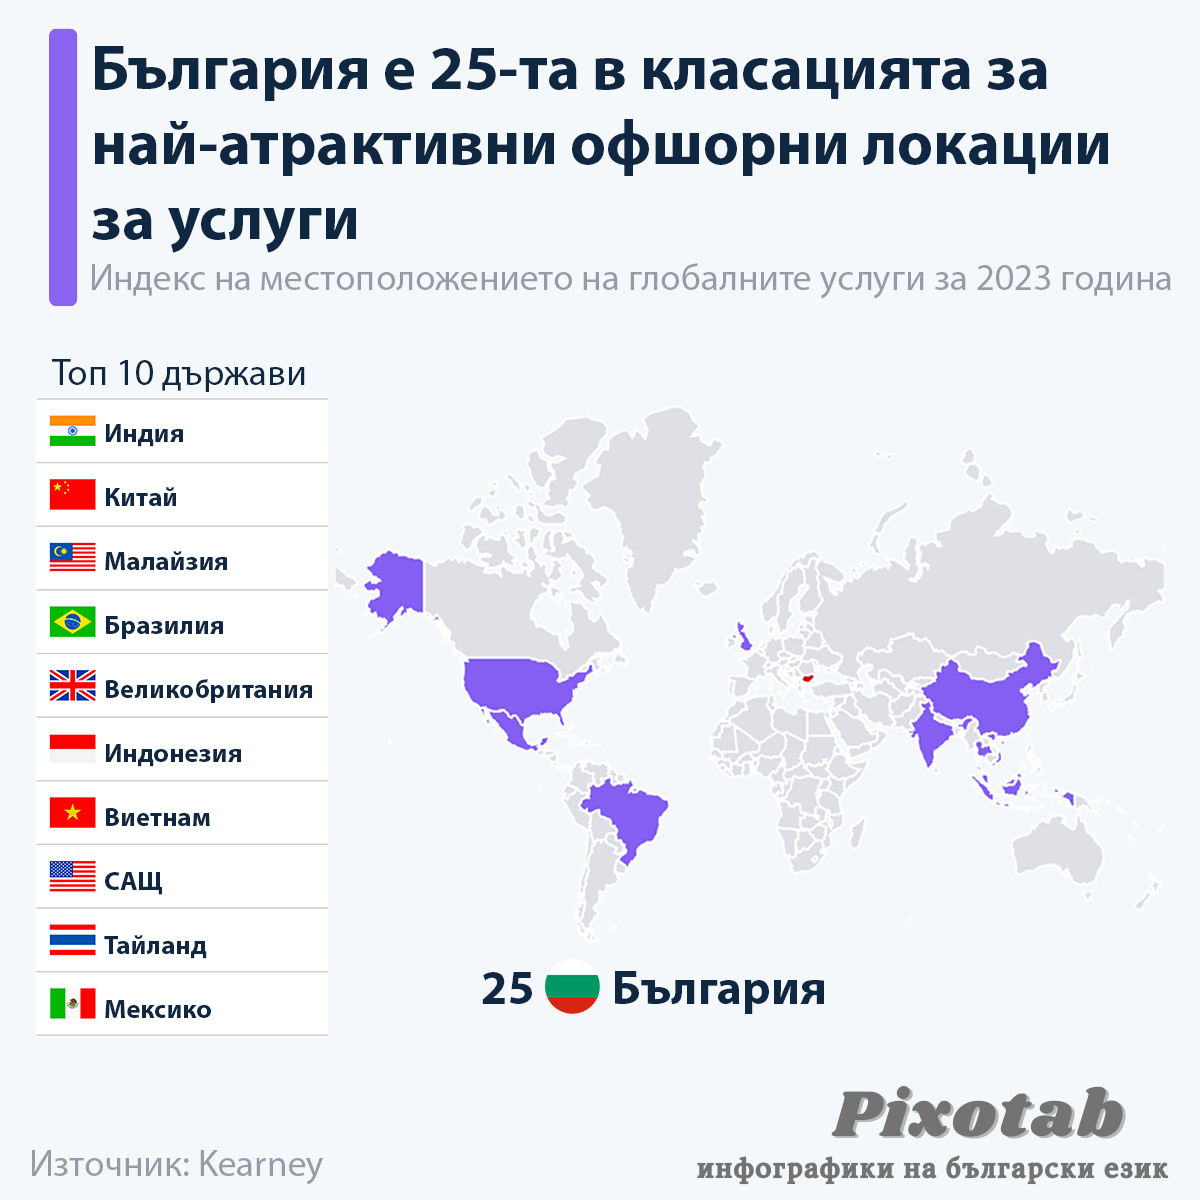 България е 25-та в класацията за най-атрактивни офшорни локации за услуги